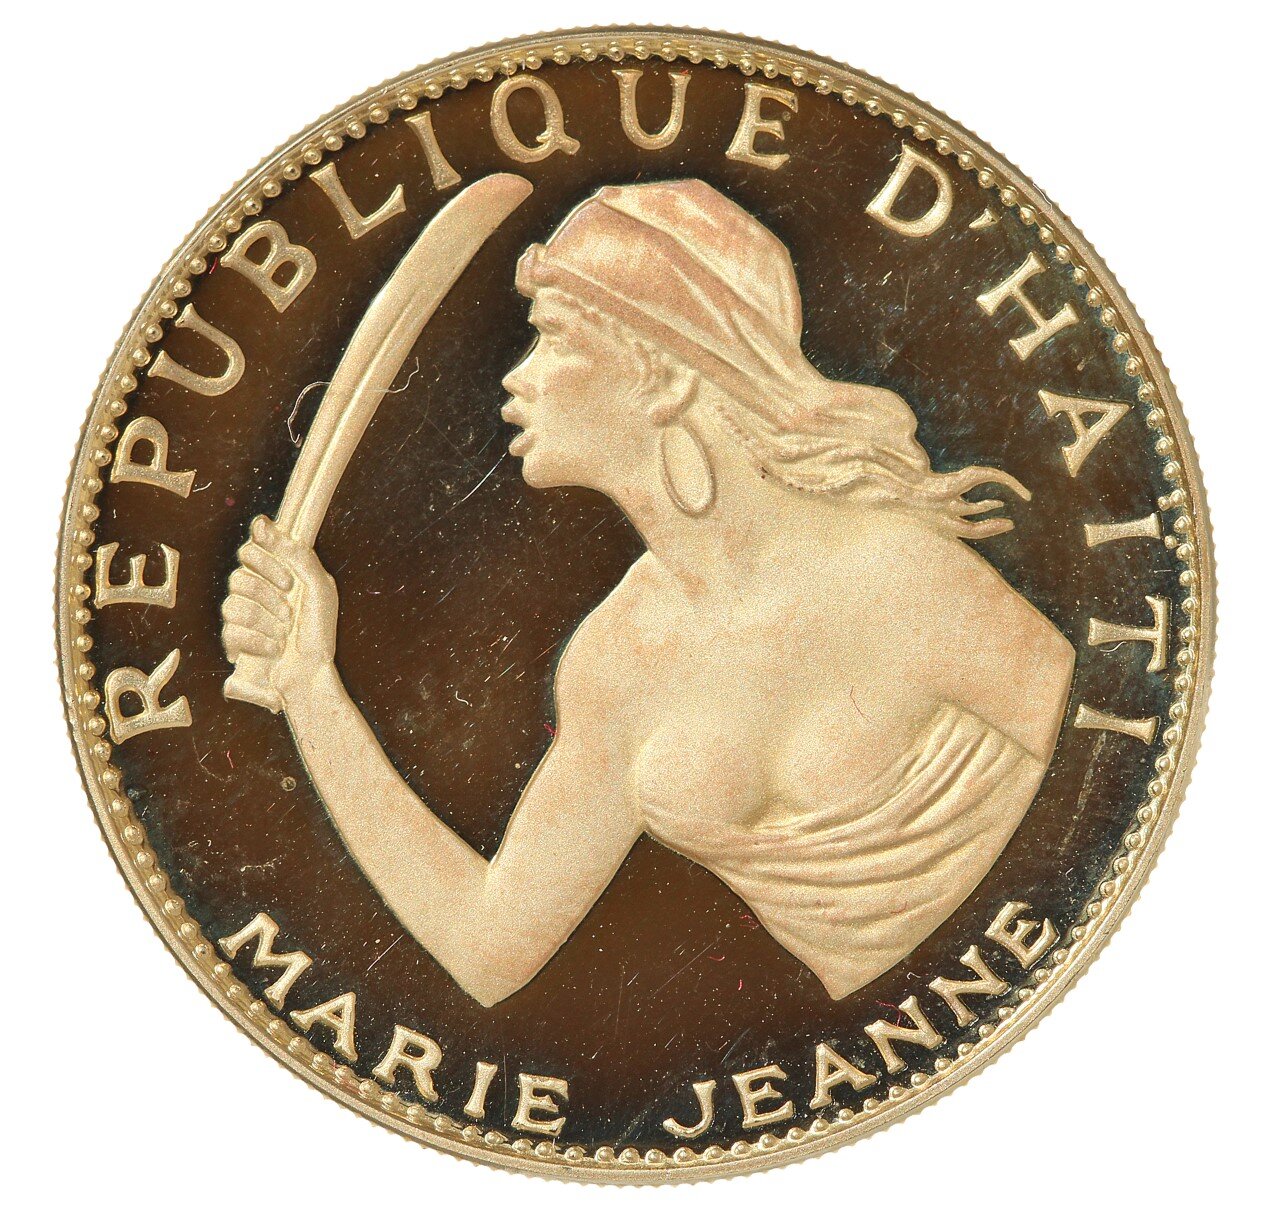 Commemorative 100 Gourdes Non-Circulating Coin (Avers), 1970, Collection Joseph Guerdy Lissade